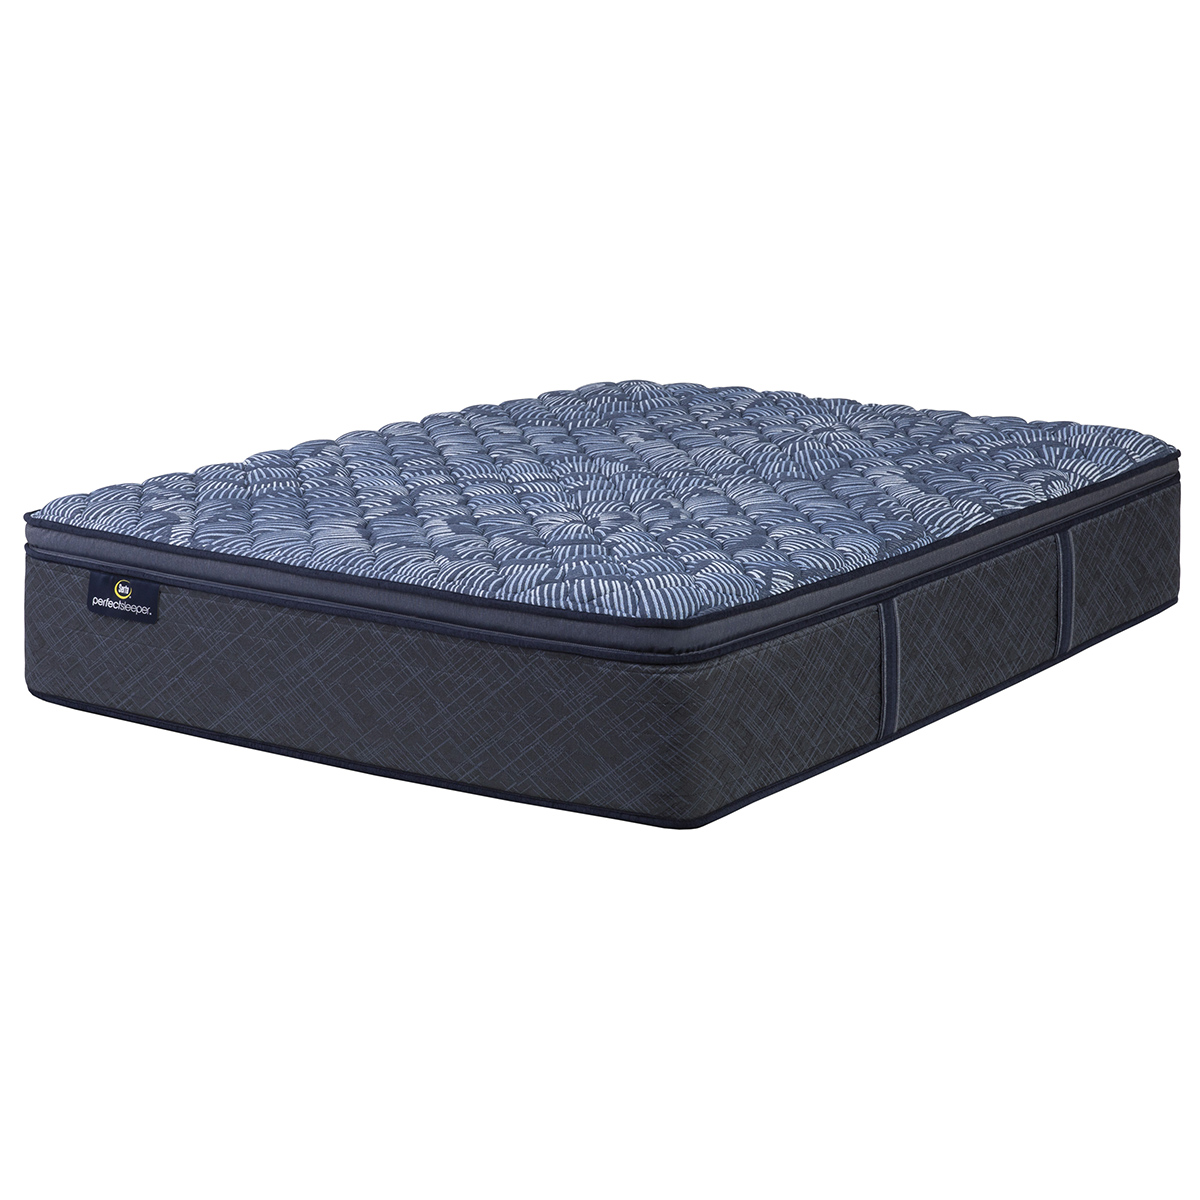 Serta(R) Perfect Sleeper(R) Cobalt Calm Firm Pillow Top Mattress